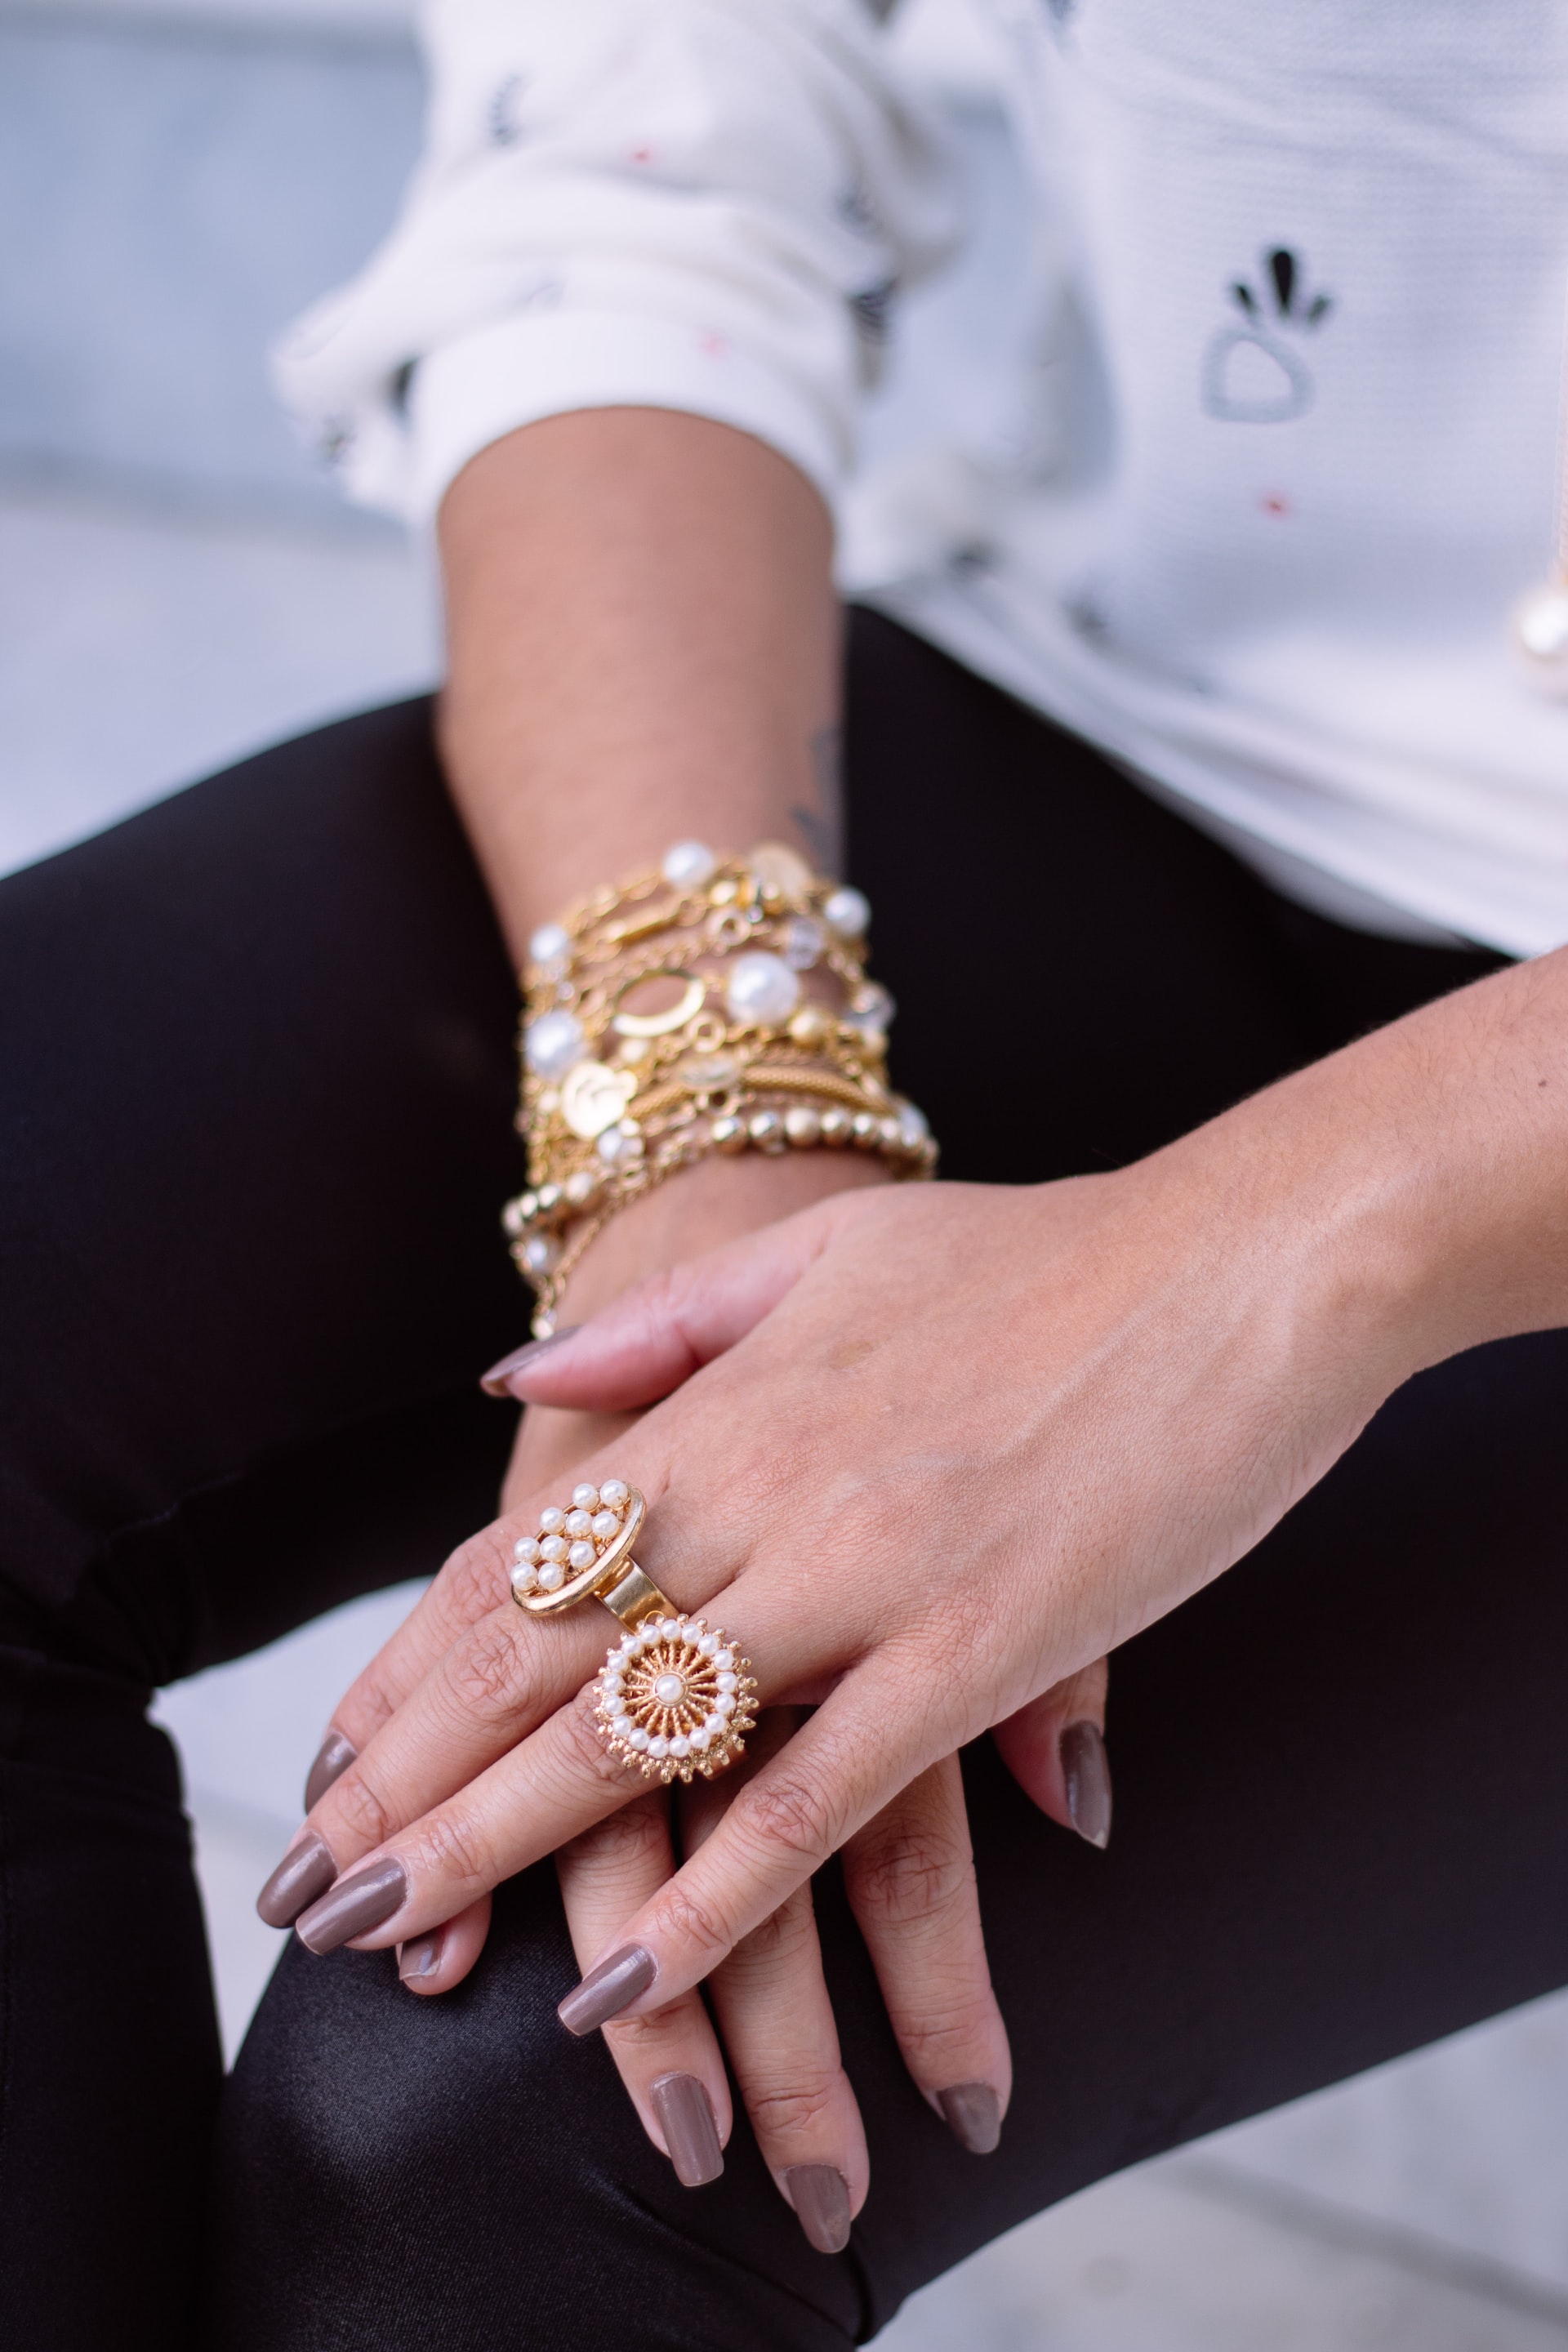 Zwei Hände auf einem Knie übereinandergelegt. Daran viele Ringe und Armbänder in Gold. Die Fingernägel sind hellbraun lackiert